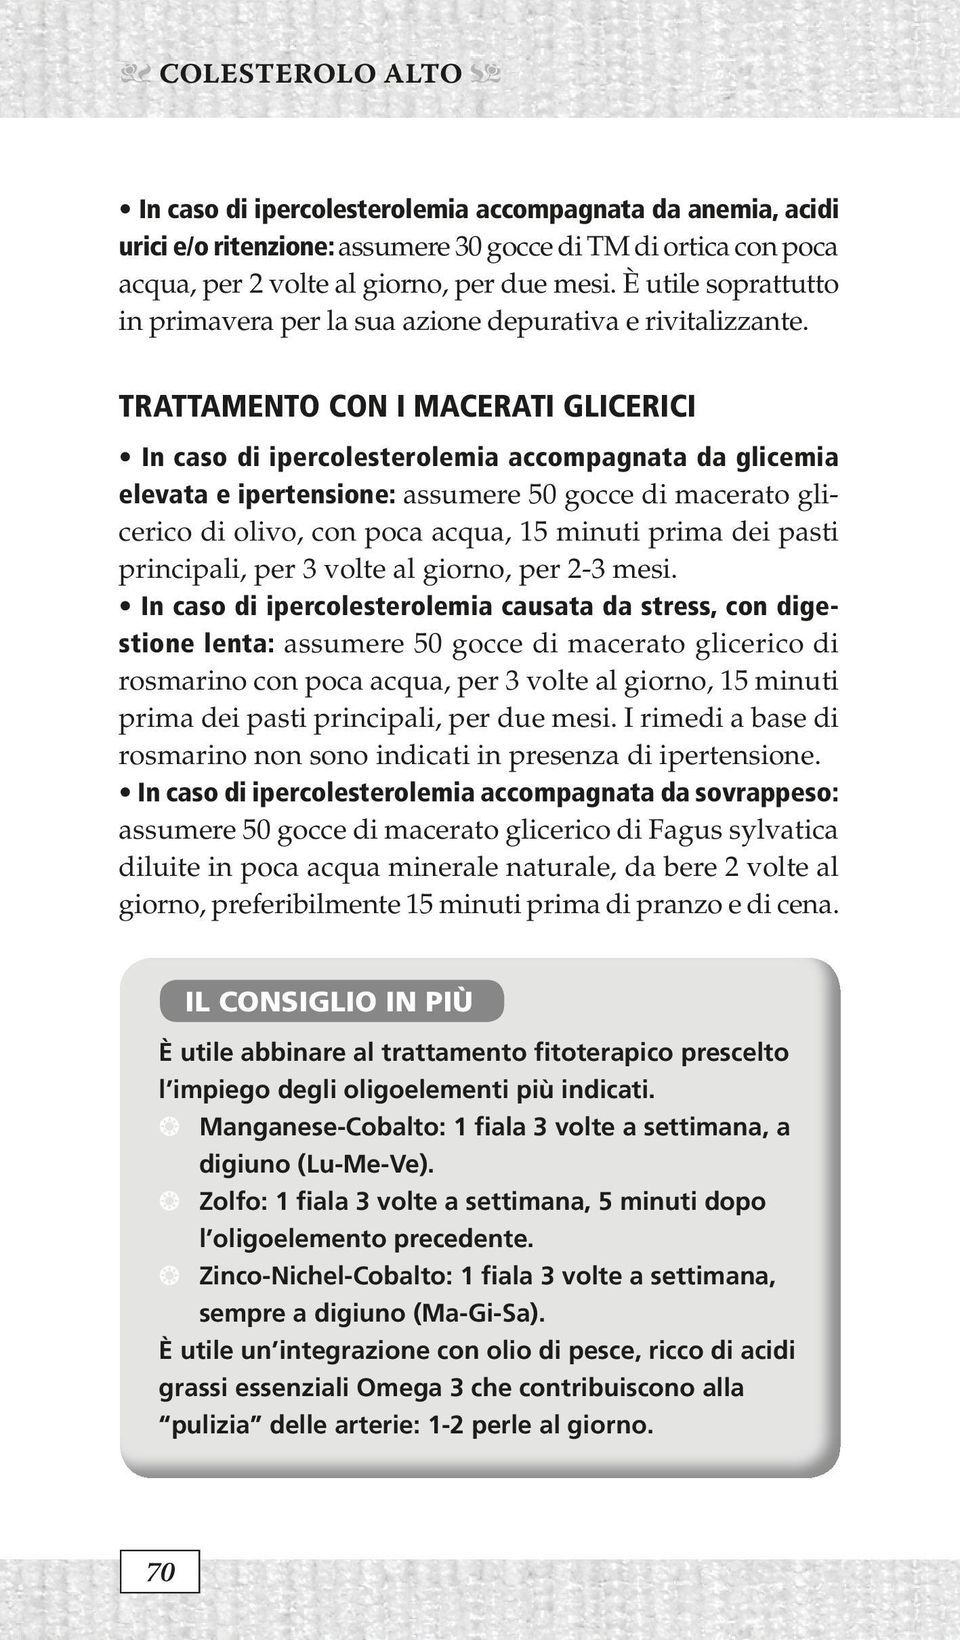 trattamento con i macerati glicerici In caso di ipercolesterolemia accompagnata da glicemia elevata e ipertensione: assumere 50 gocce di macerato glicerico di olivo, con poca acqua, 15 minuti prima